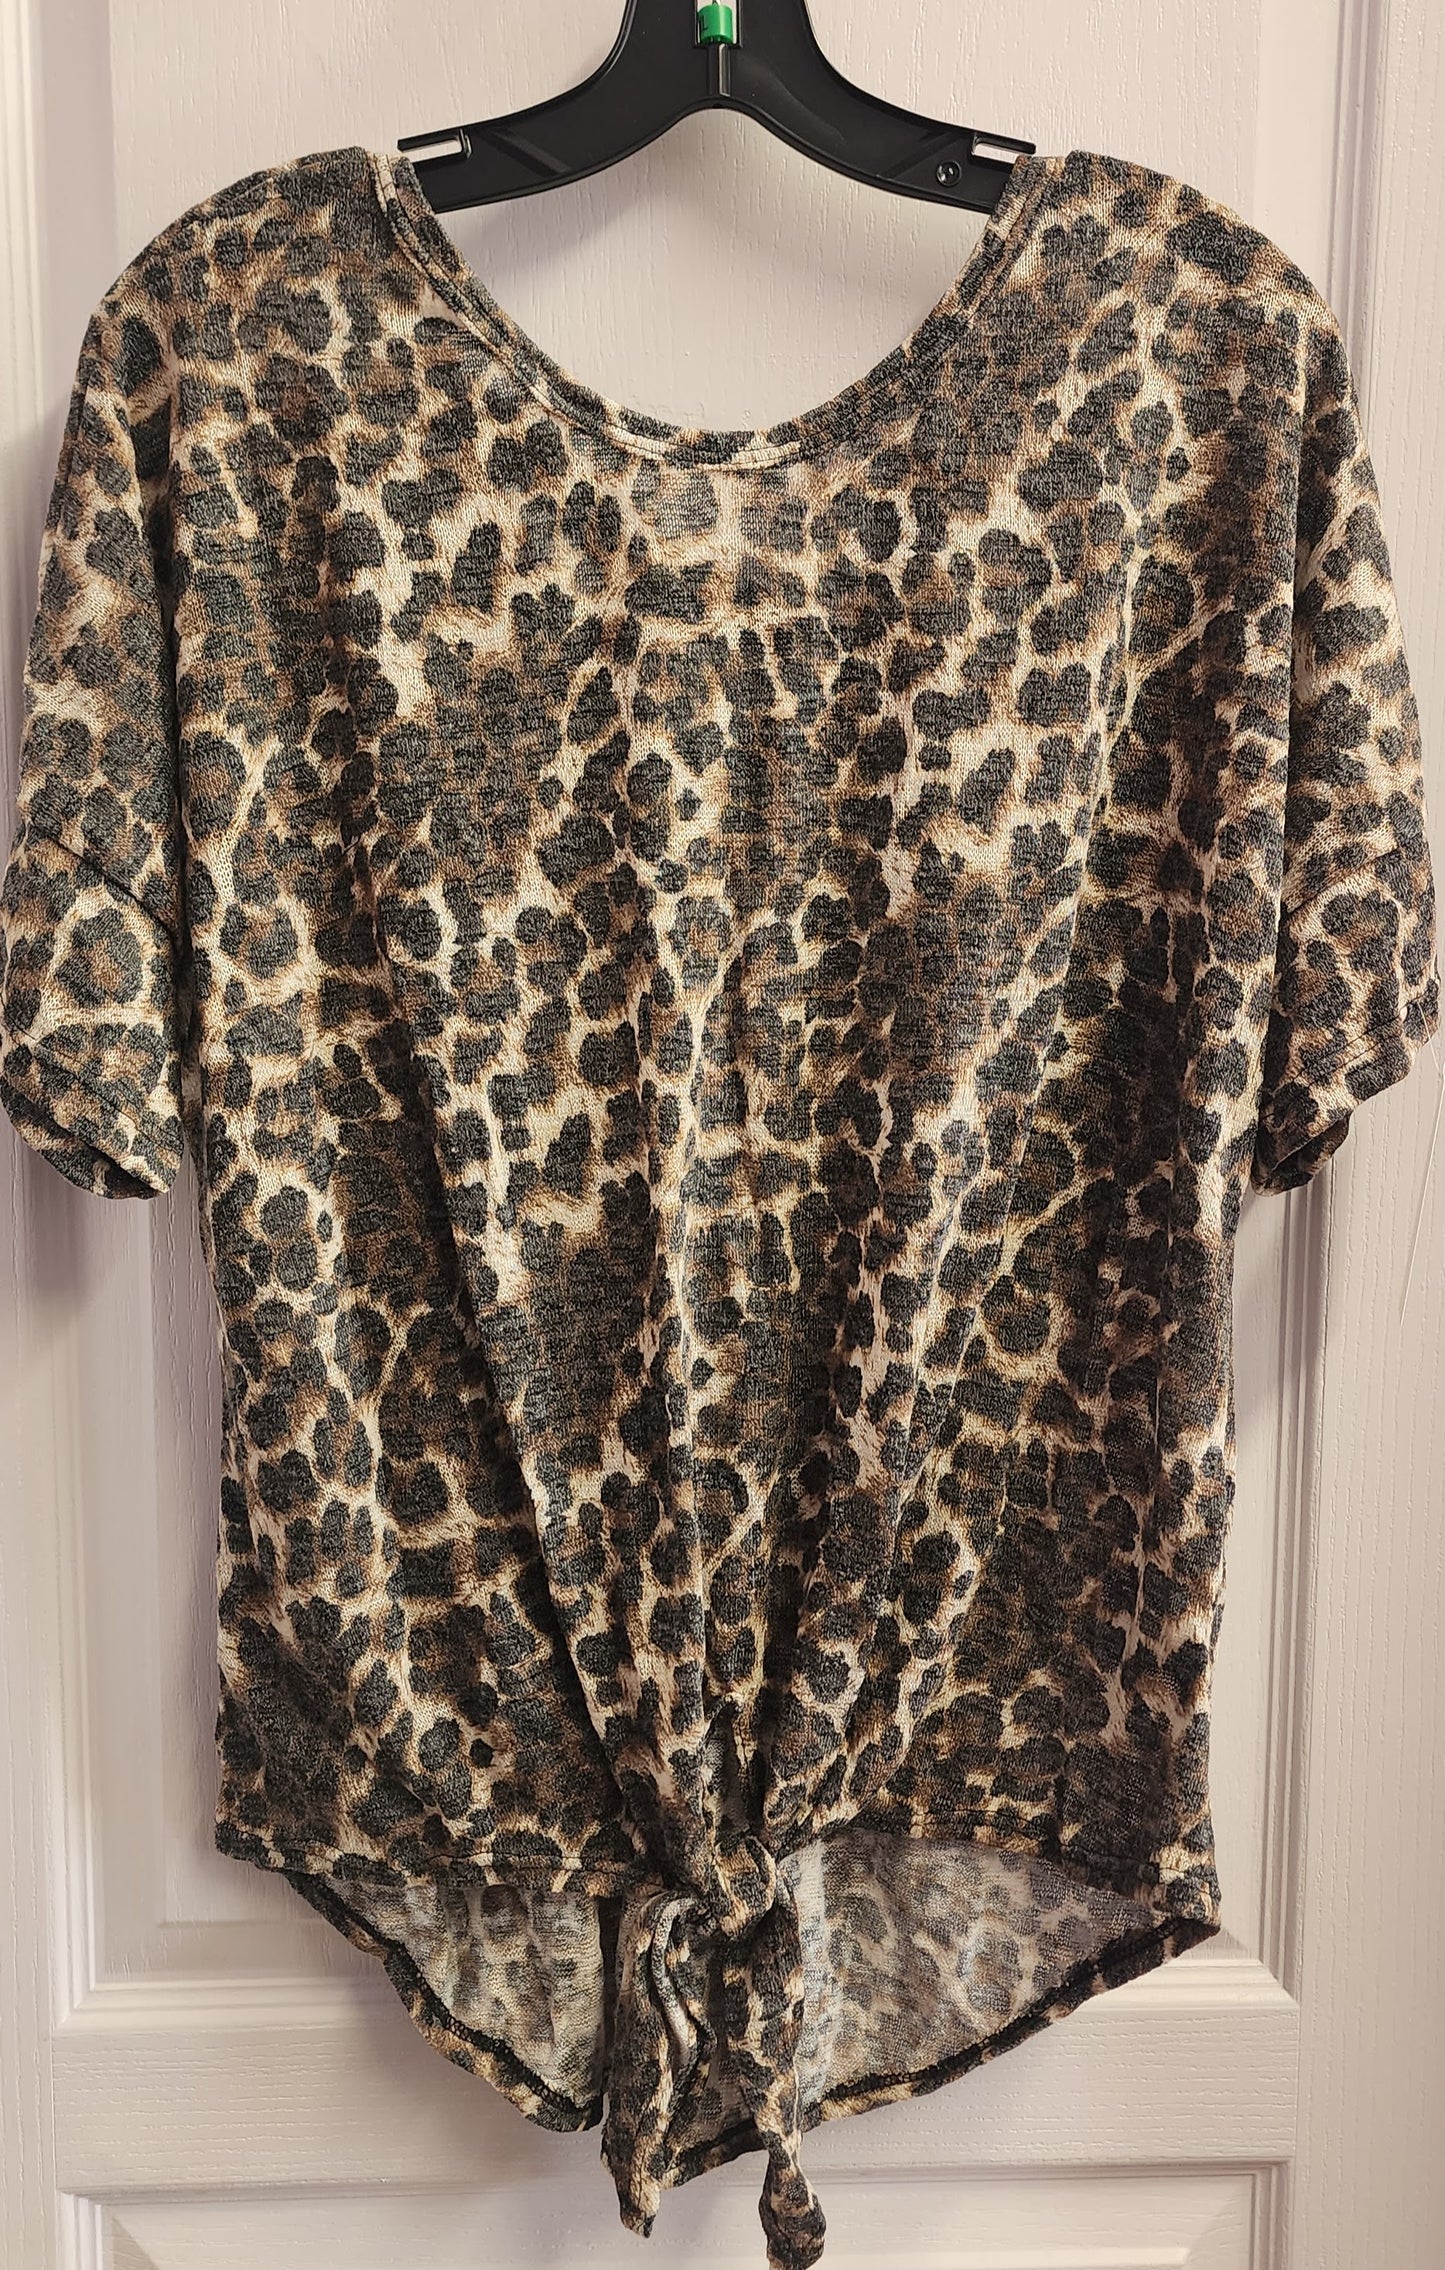 Leopard Print Front Tie Top (Plus Size)